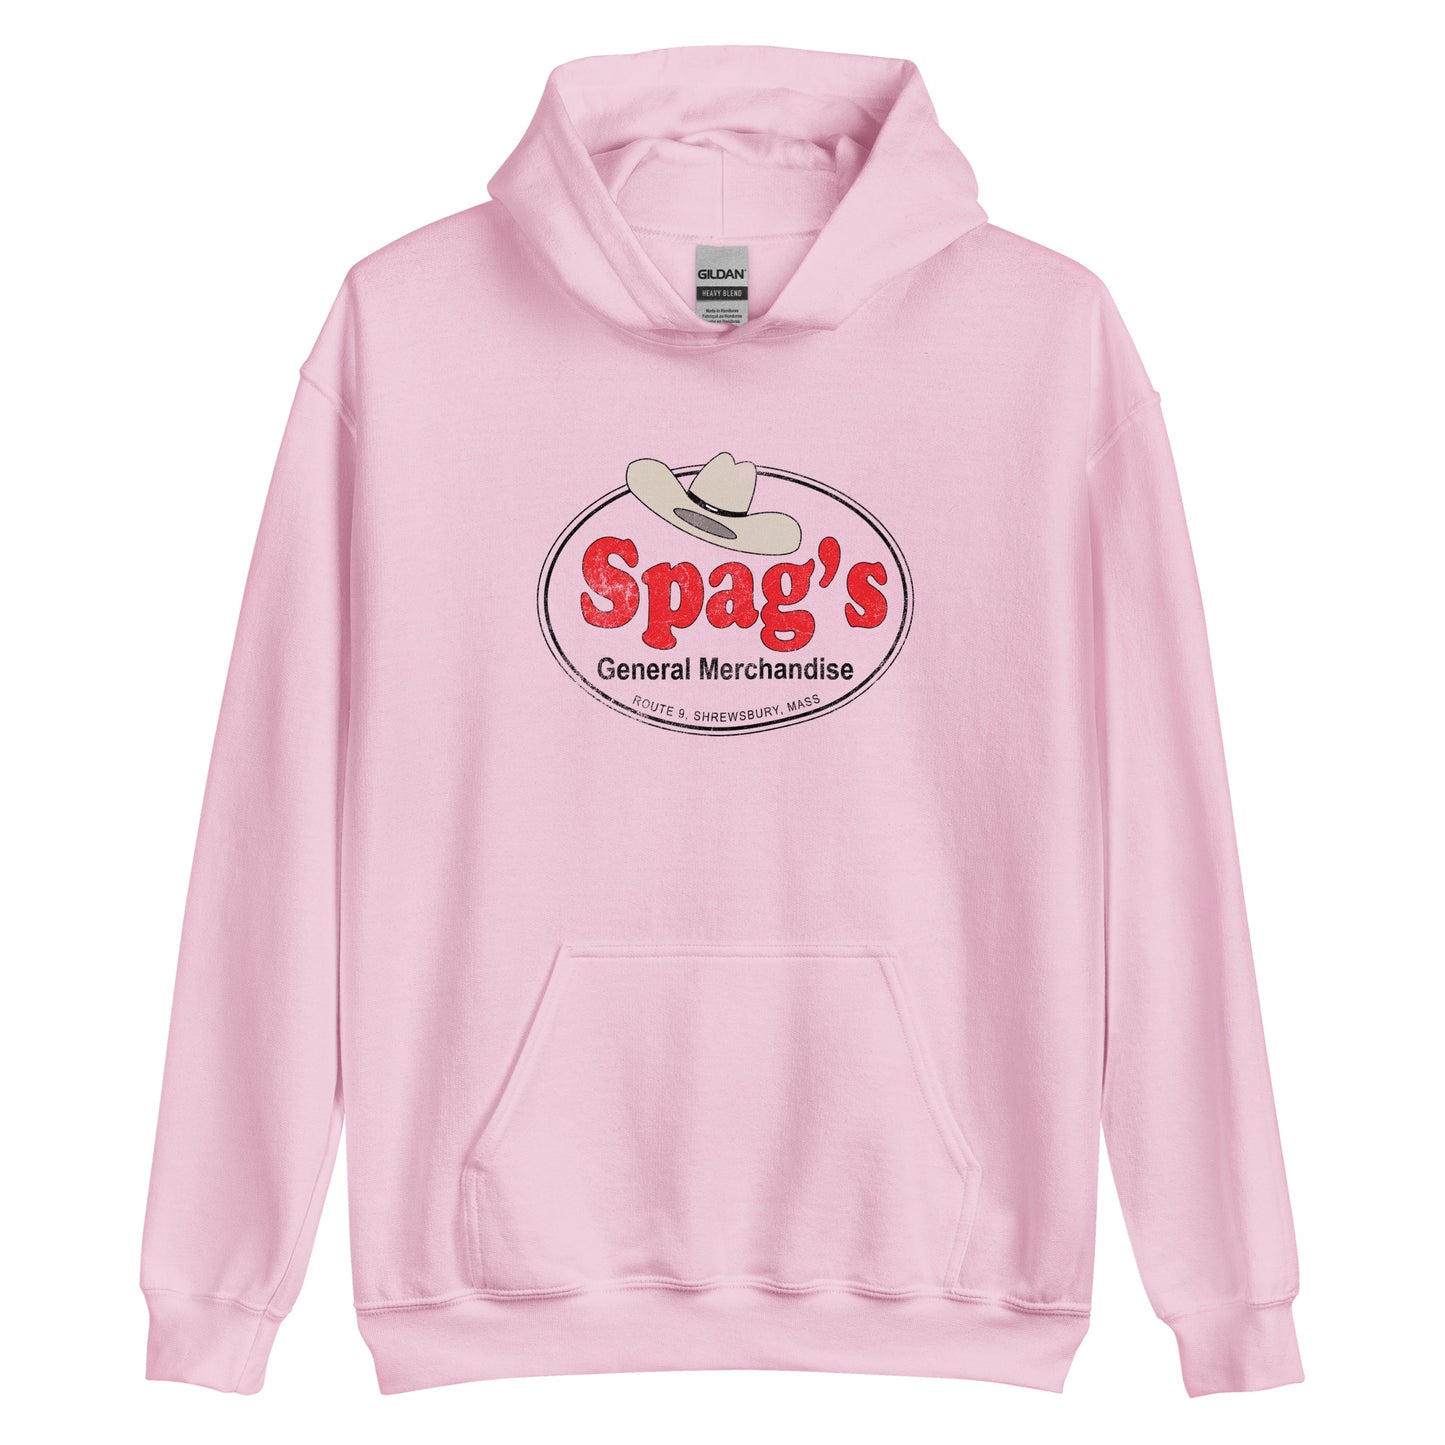 Spags Hoodie - Shrewsbury, MA | Retro Vintage style Graphic Sweatshirt